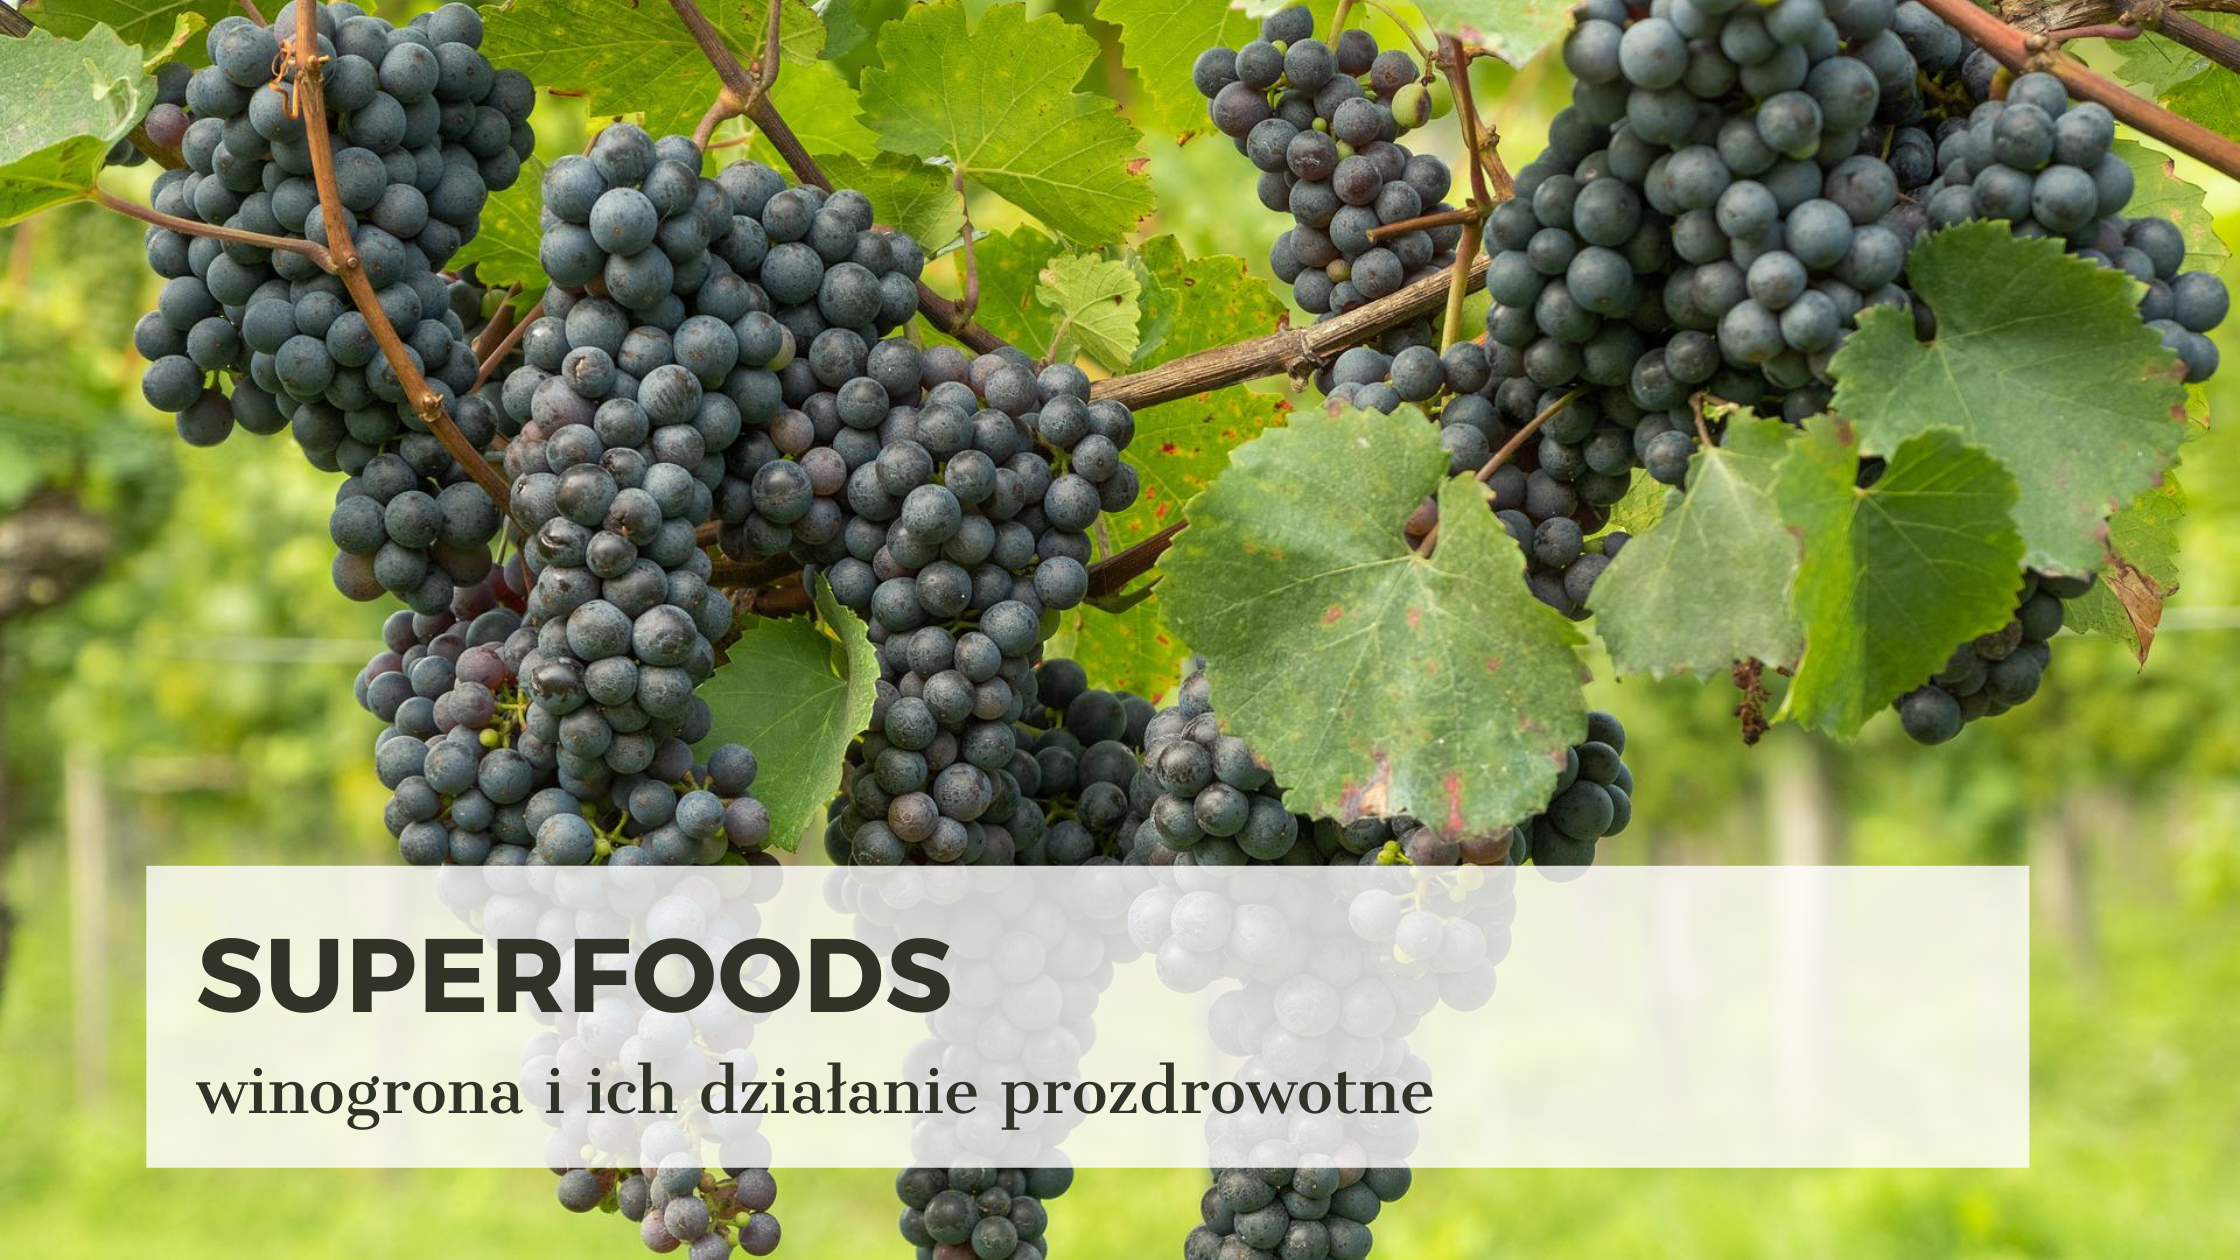 superfoods-winogrona-wlasciwosc-resweratrol-polifenole-marta-szymanska-dietetyk-srodmiescie-concierge-zdrowia